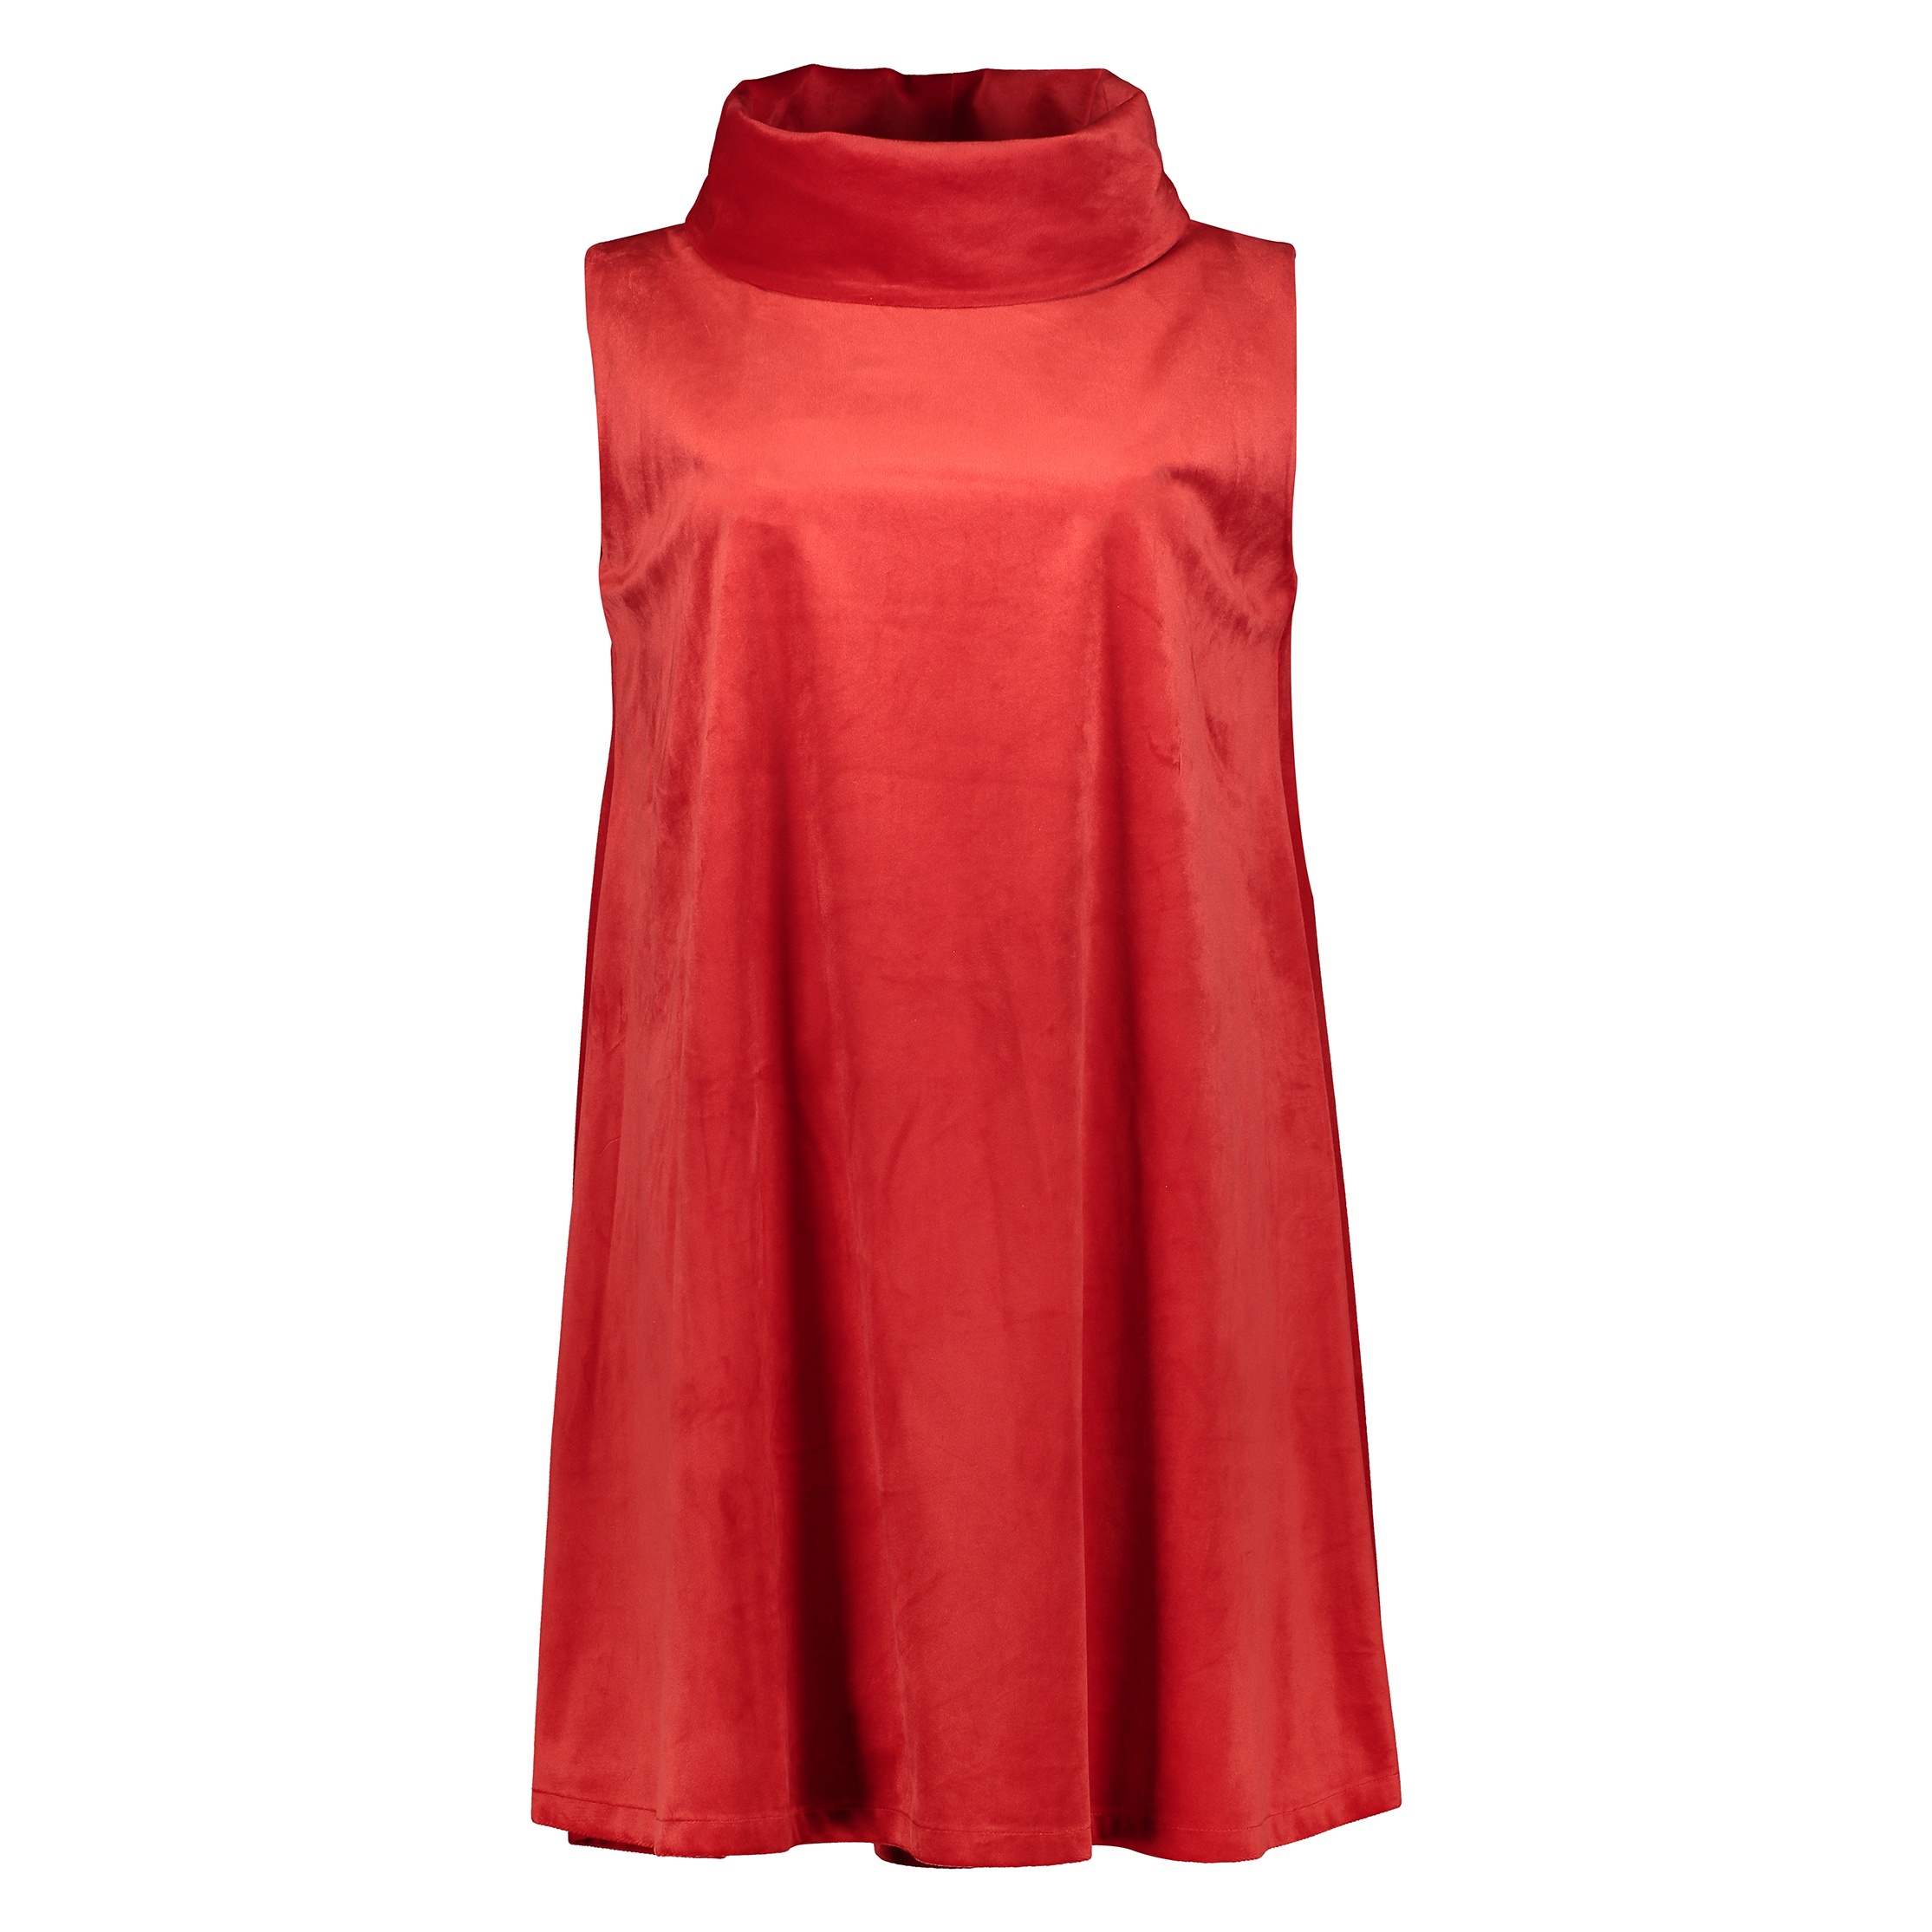 پیراهن زنانه هانن مدل 3001106-72 - قرمز - 1